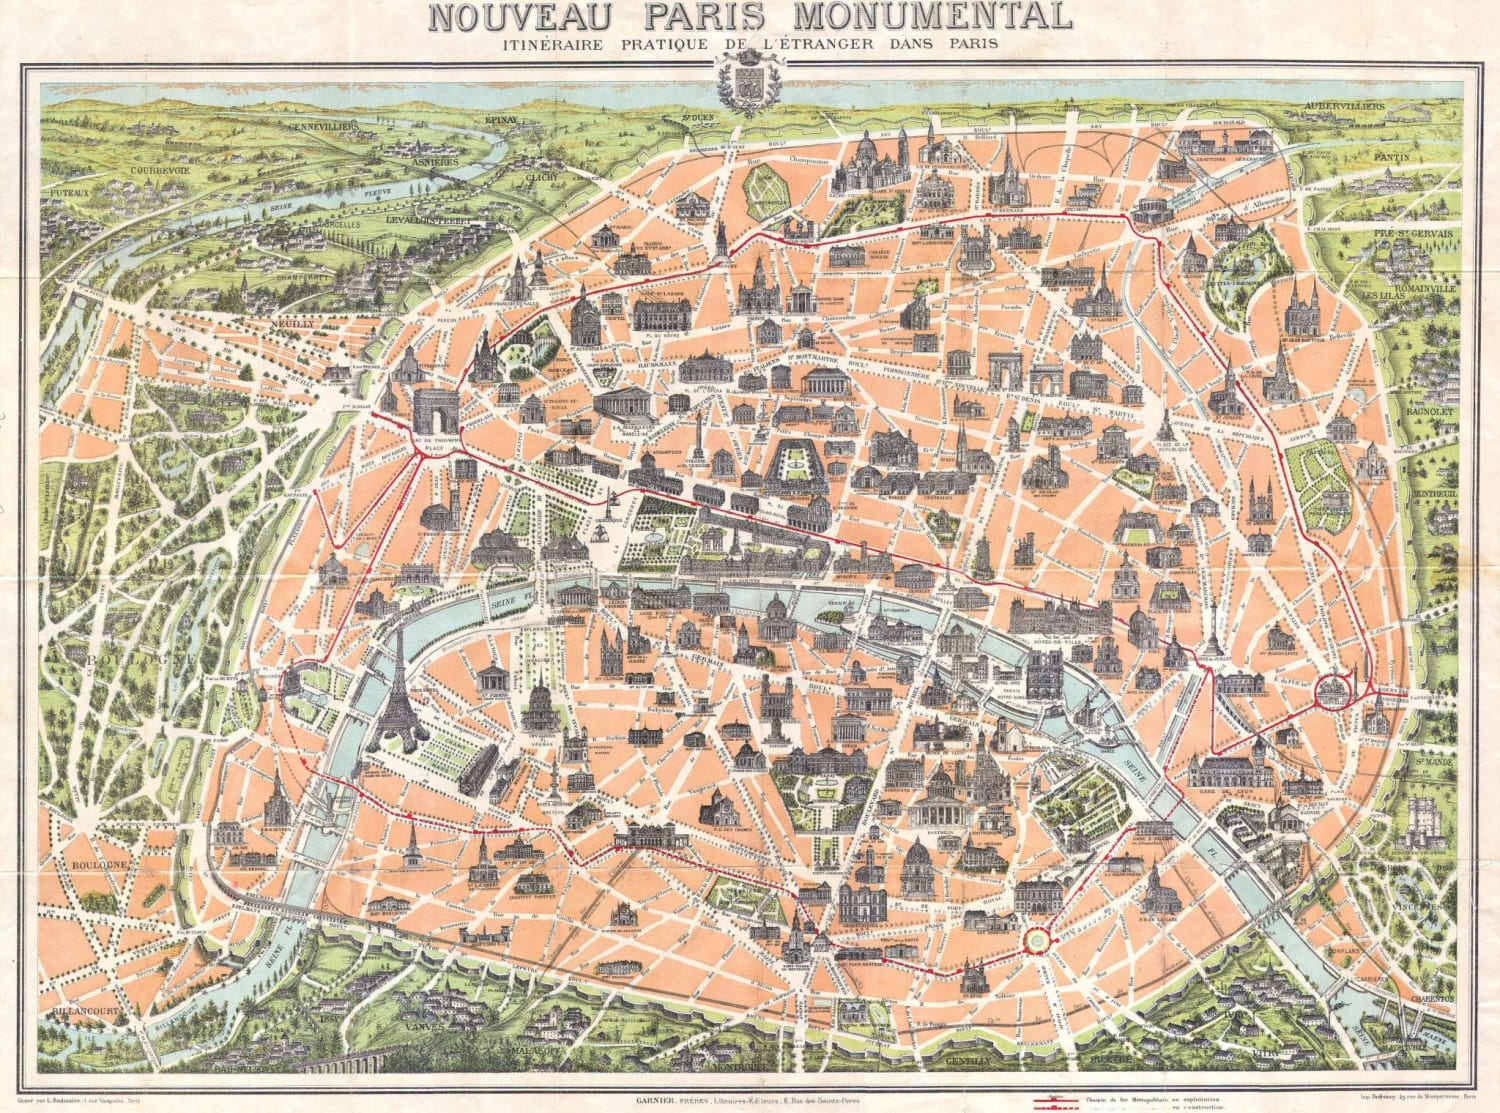 Map of Paris in 1900